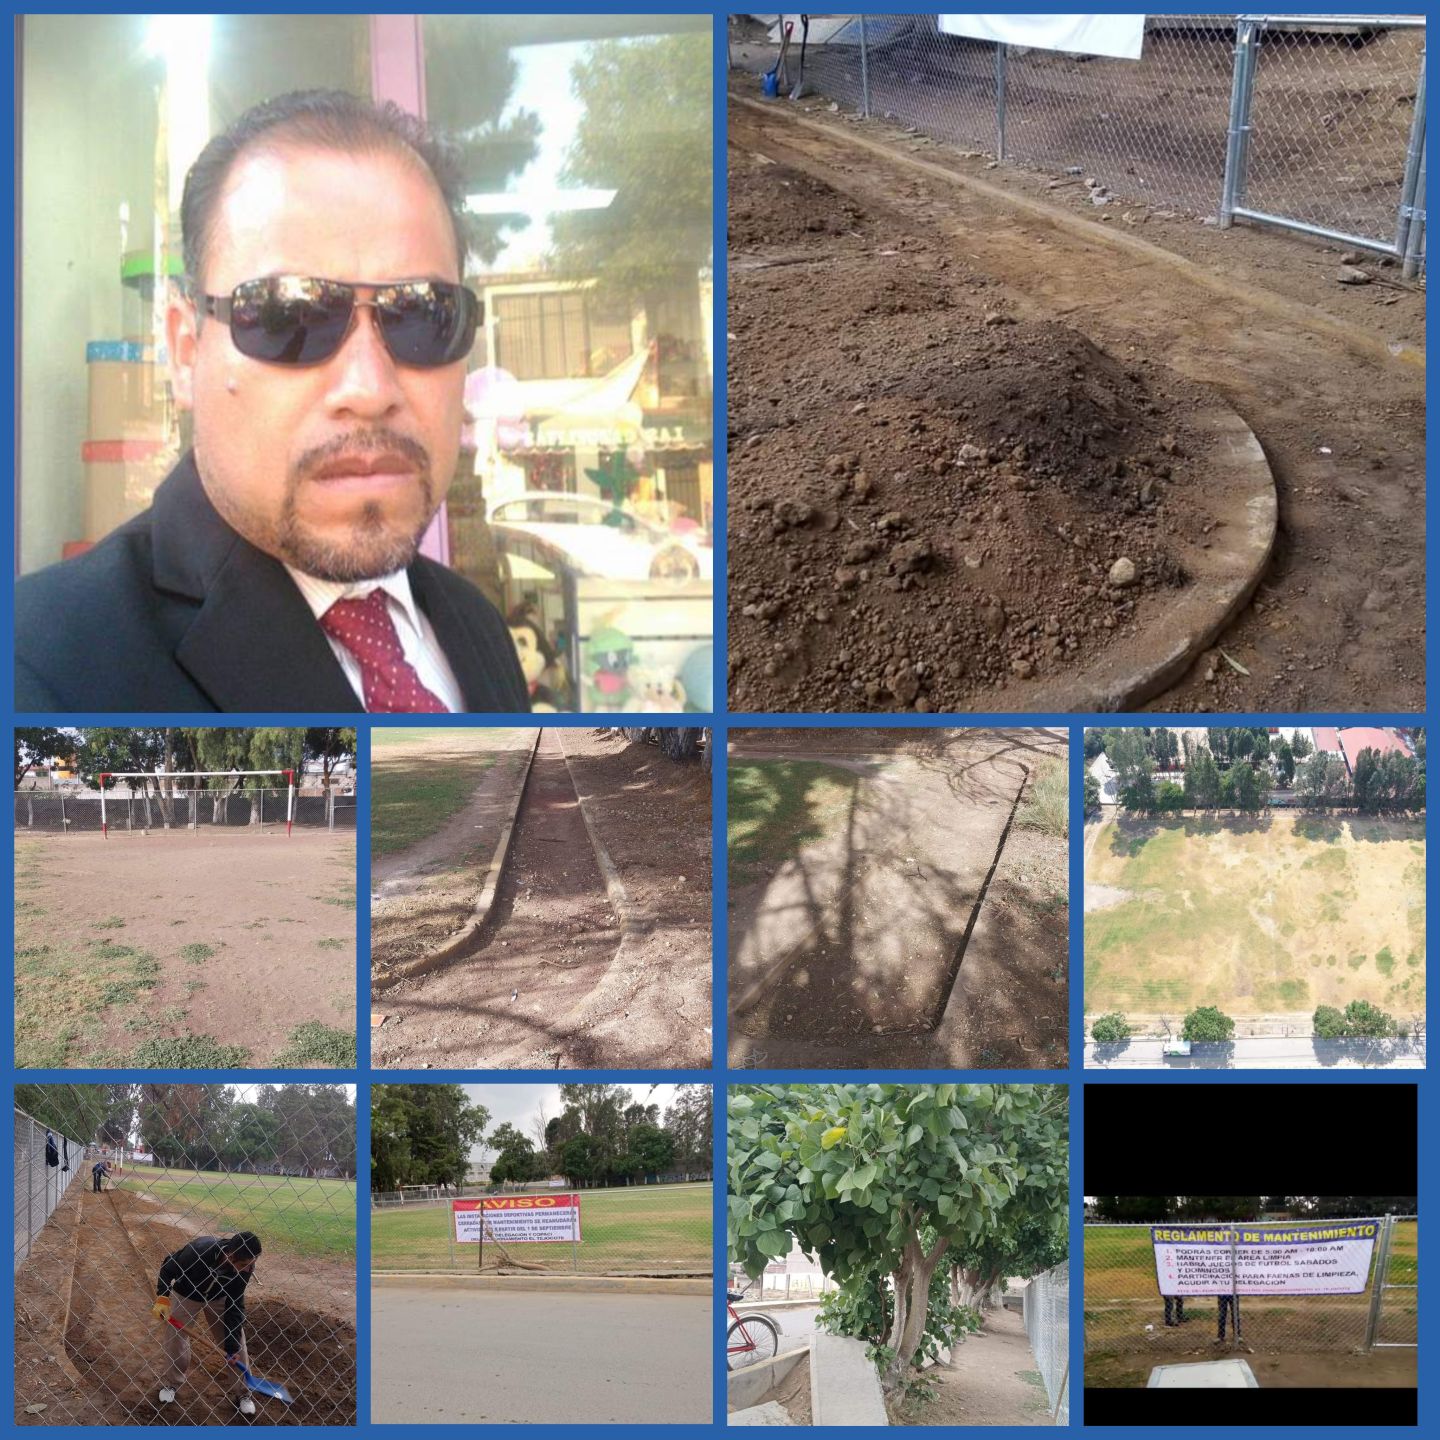 Empieza la reparación  del campo de fútbol en el fraccionamiento del Tejocote Texcoco:Juan Carlos Camacho 